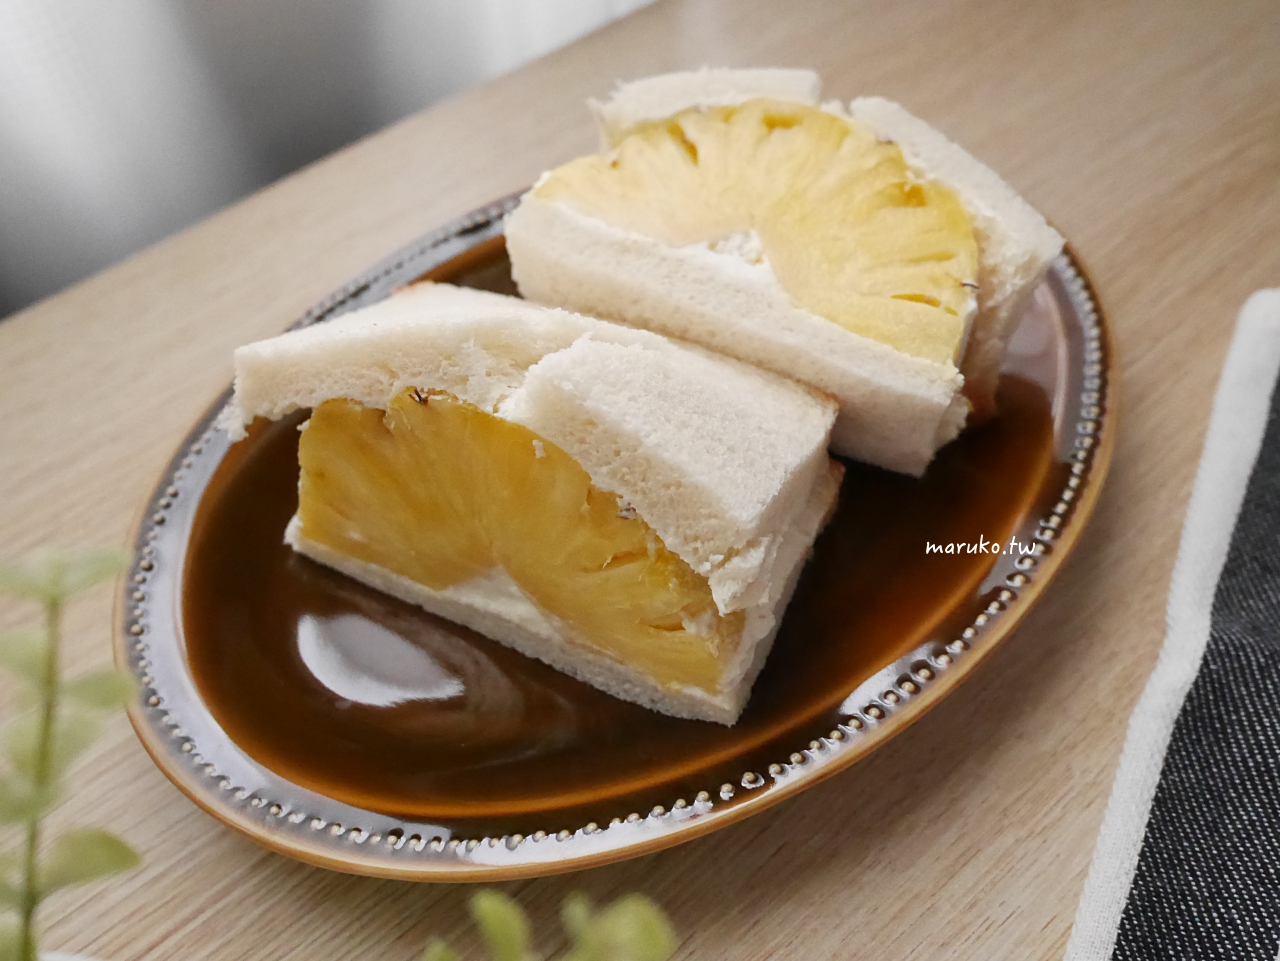 【食譜】鳳梨三明治 夏天用水果做三明治可以這樣吃 @Maruko與美食有個約會